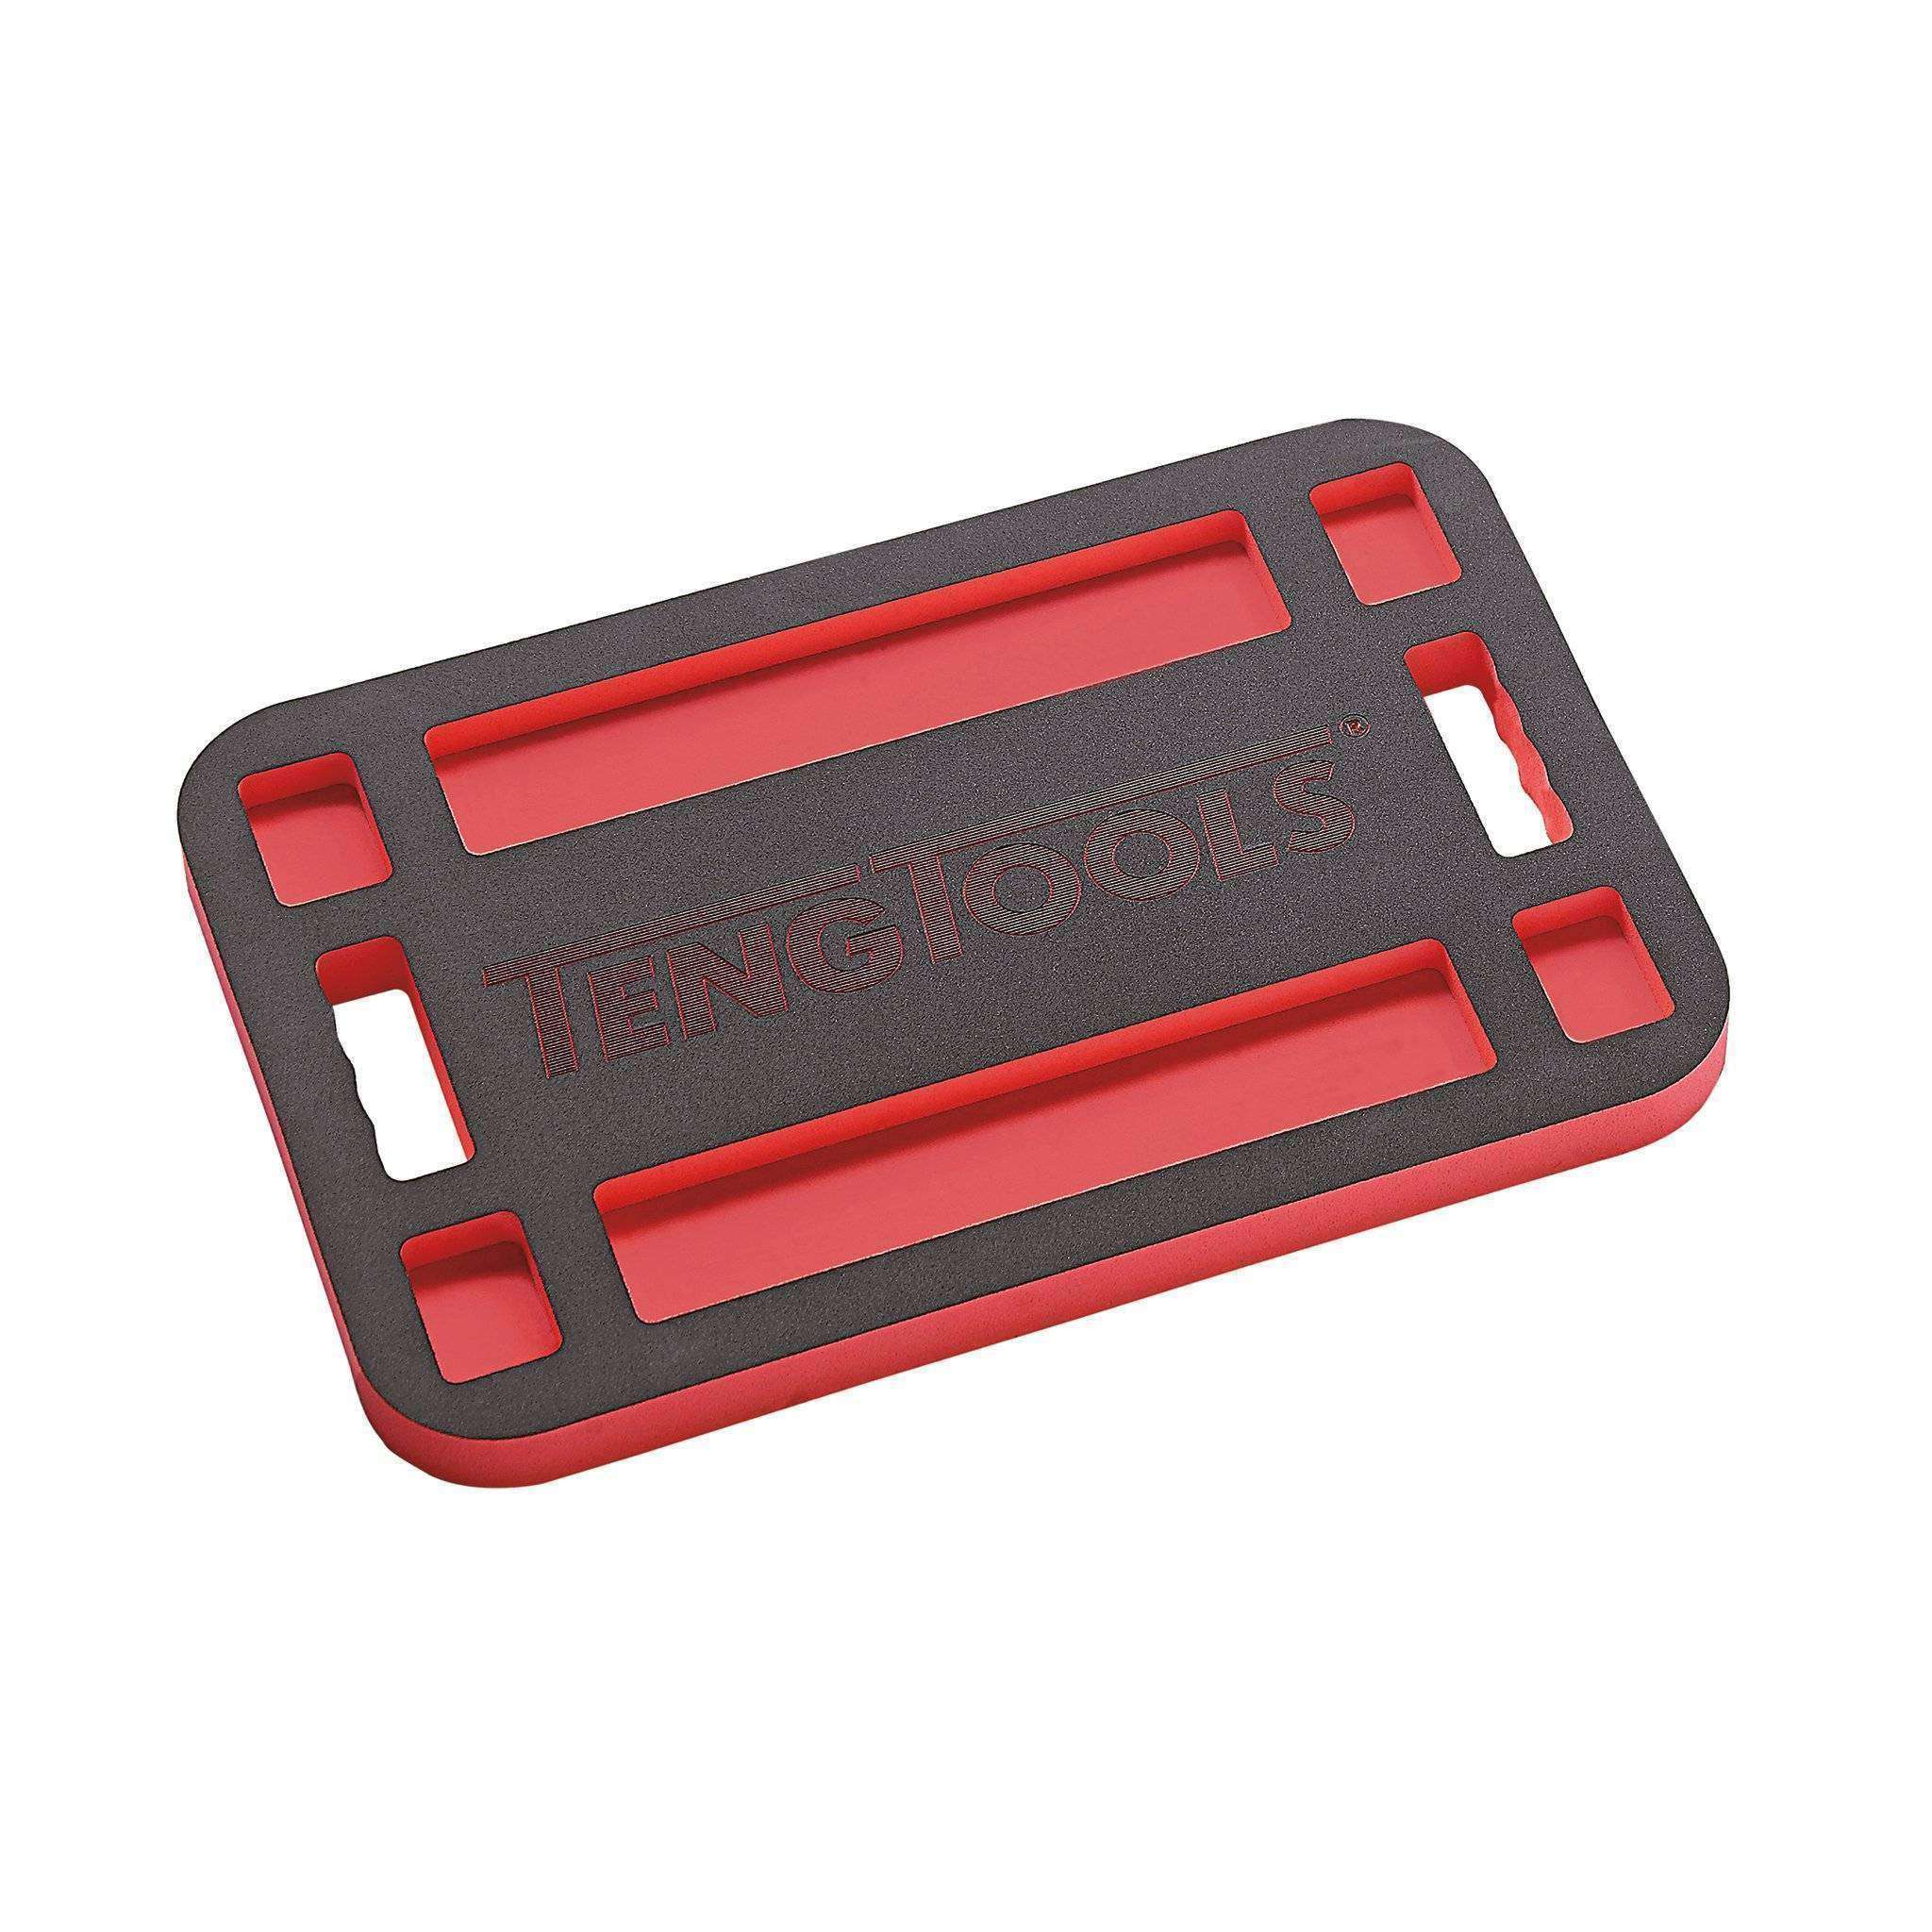 Teng Tools EVA Kneeling Pad With Storage - KP03